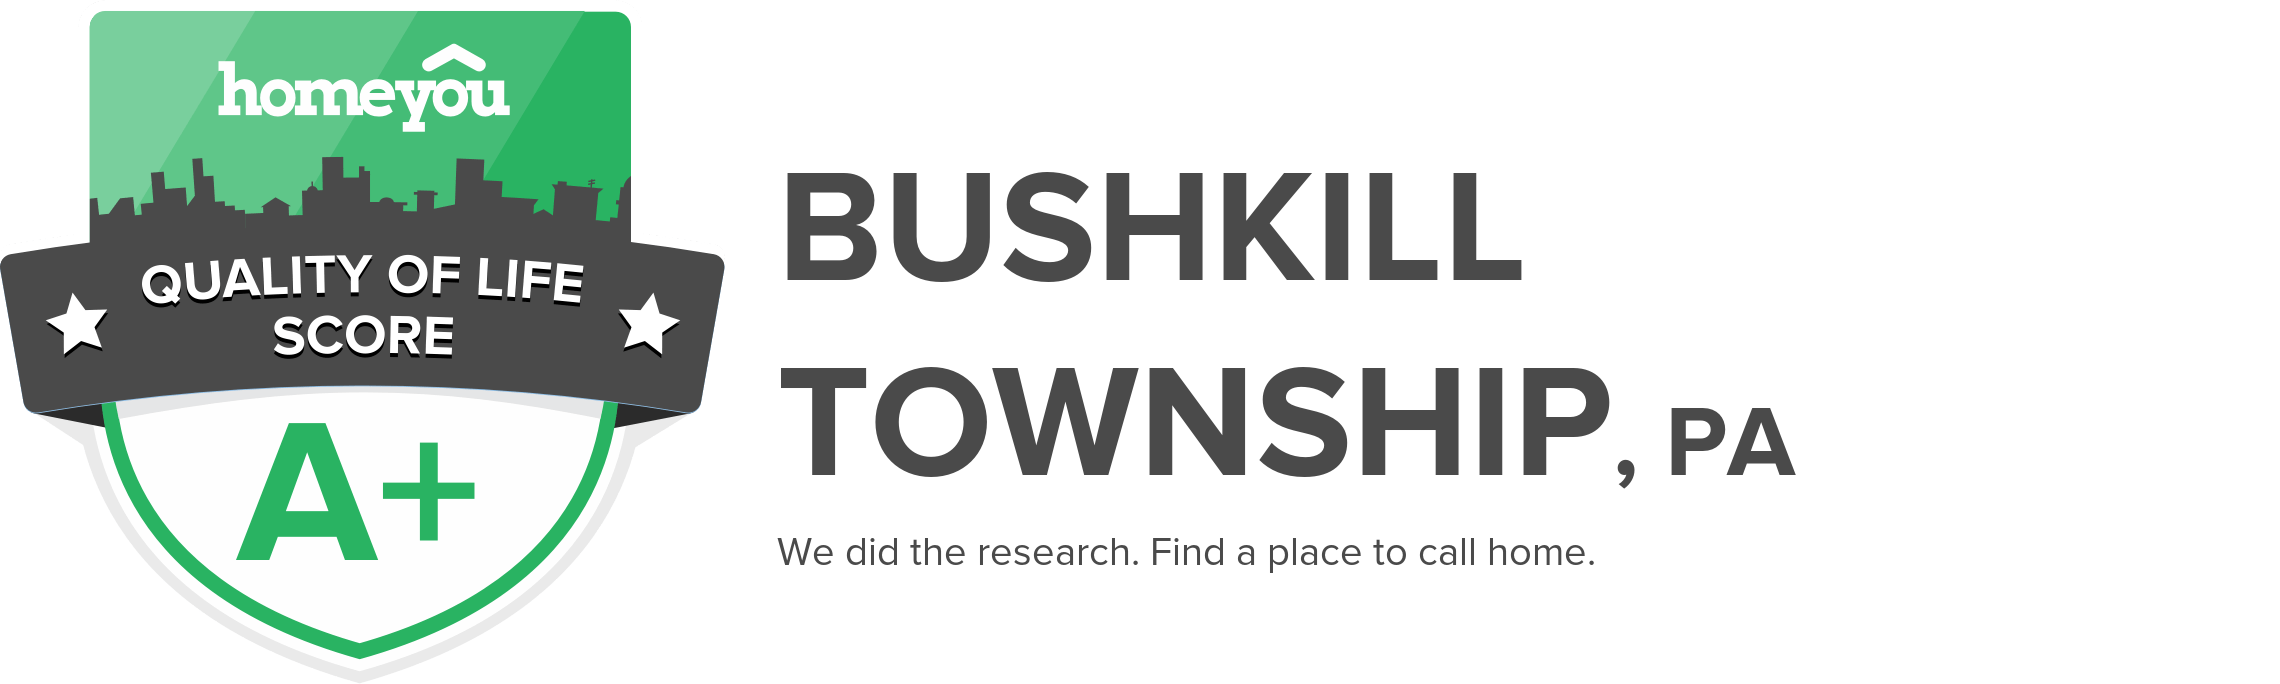 Bushkill township, PA